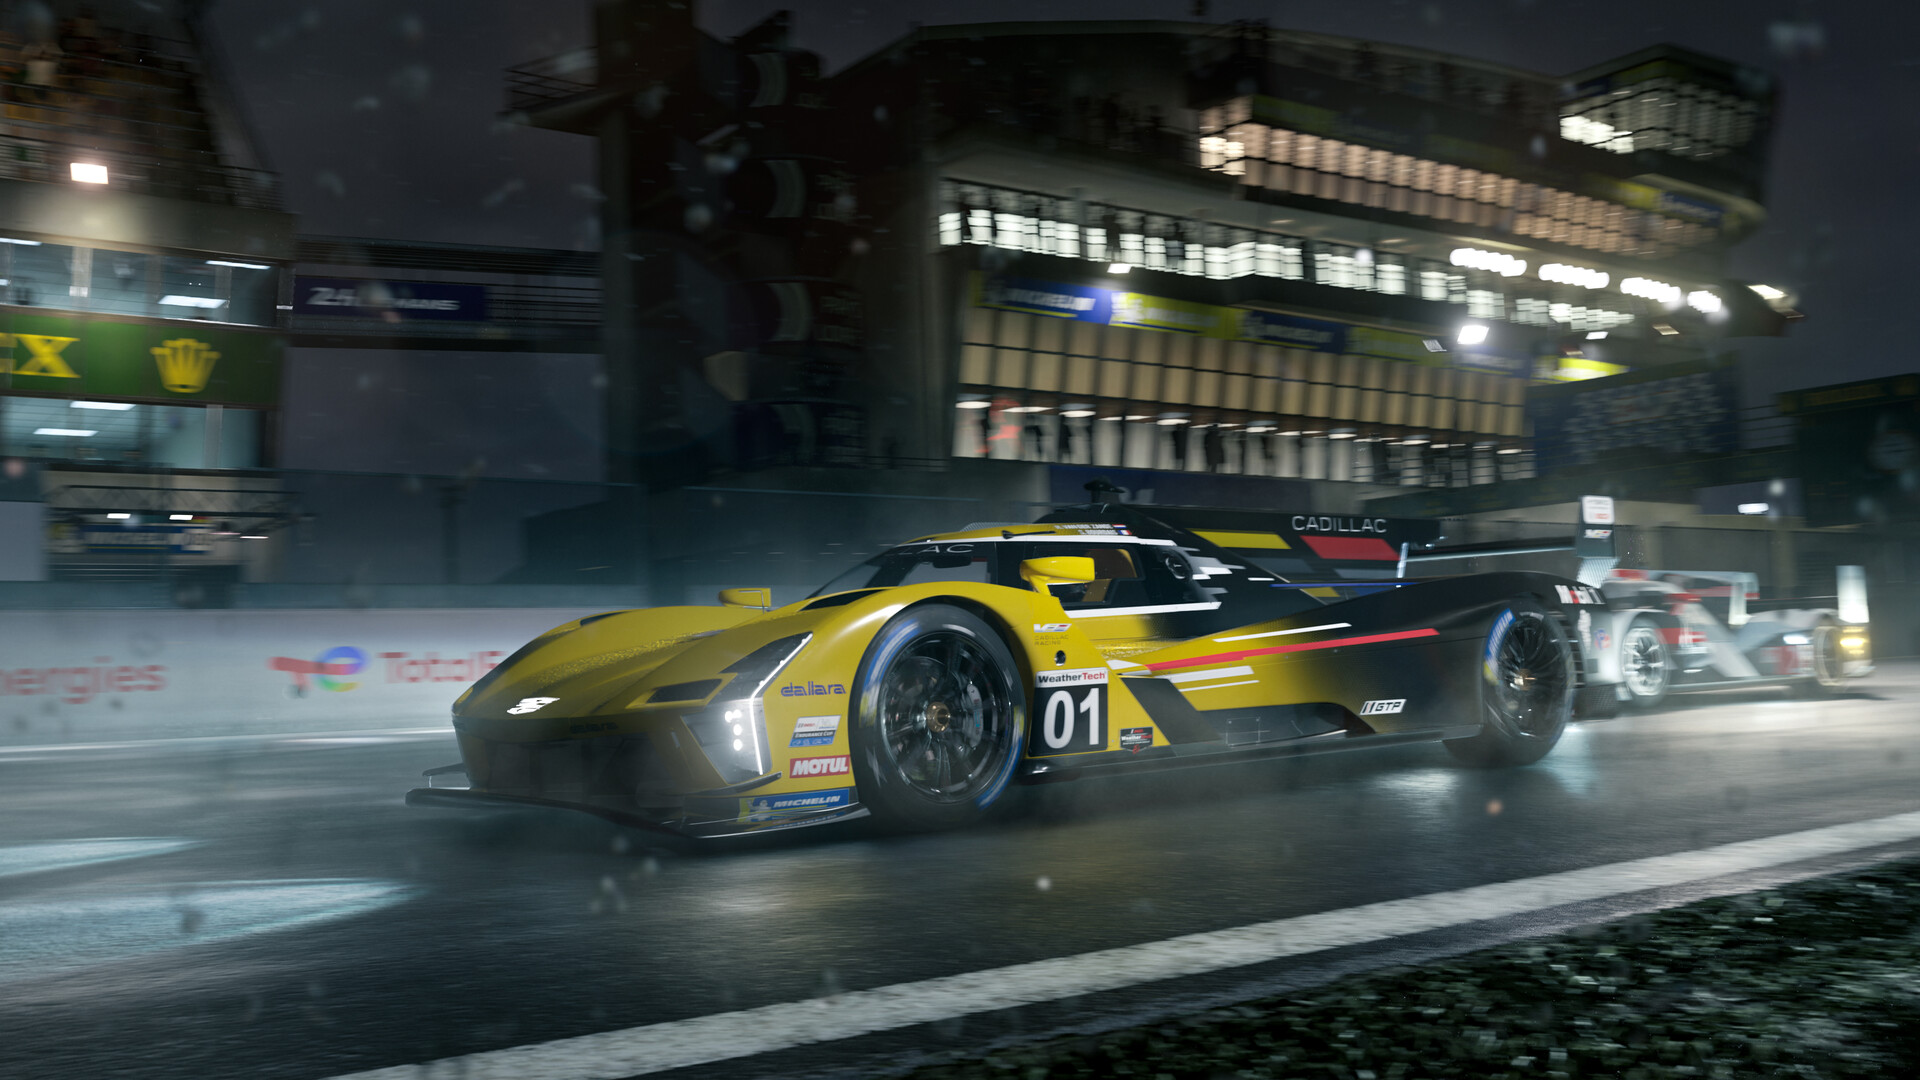 极限竞速豪华版/Forza Motorsport Premium Edition